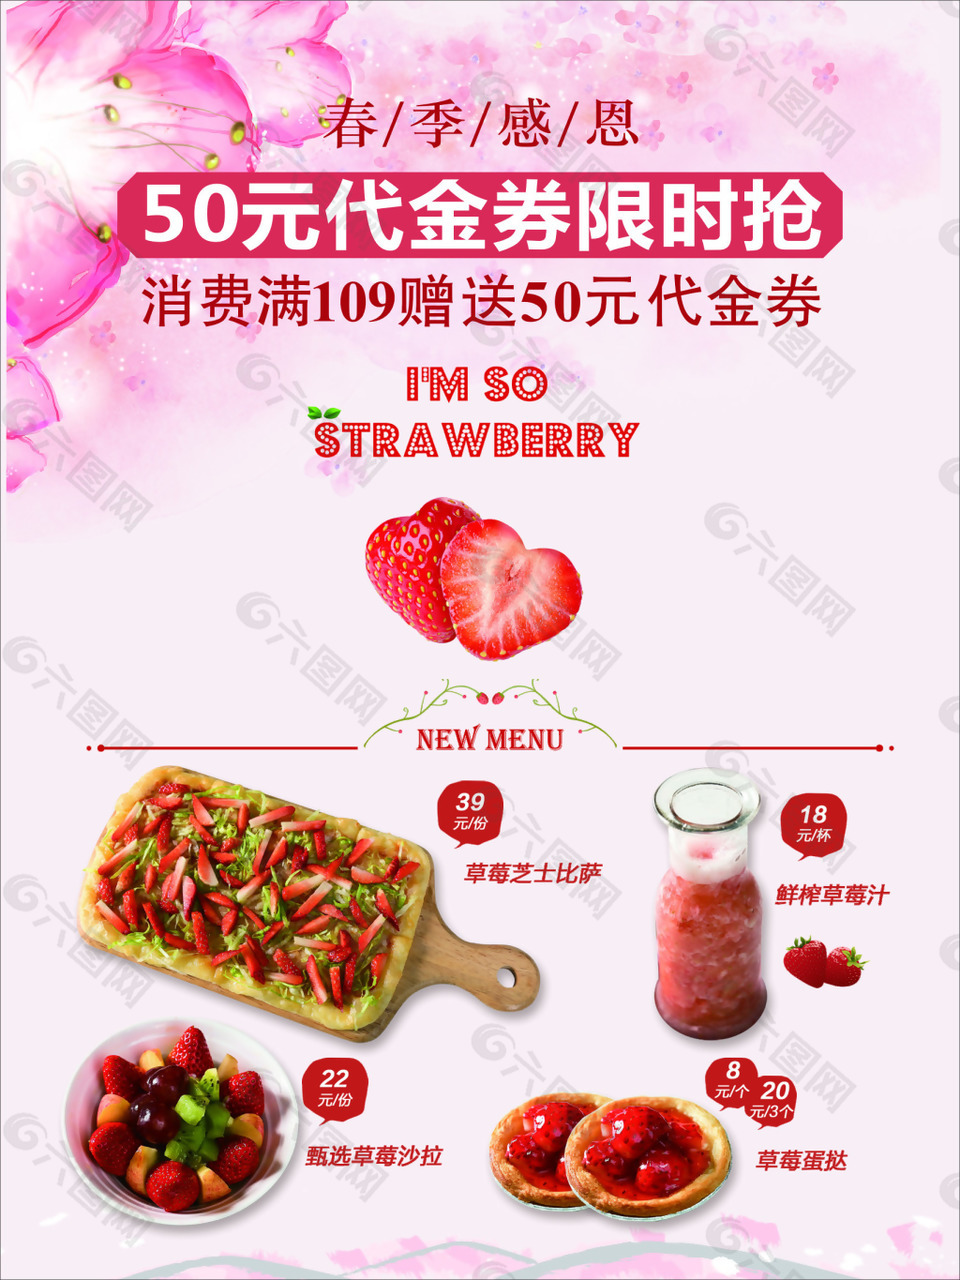 草莓促销海报